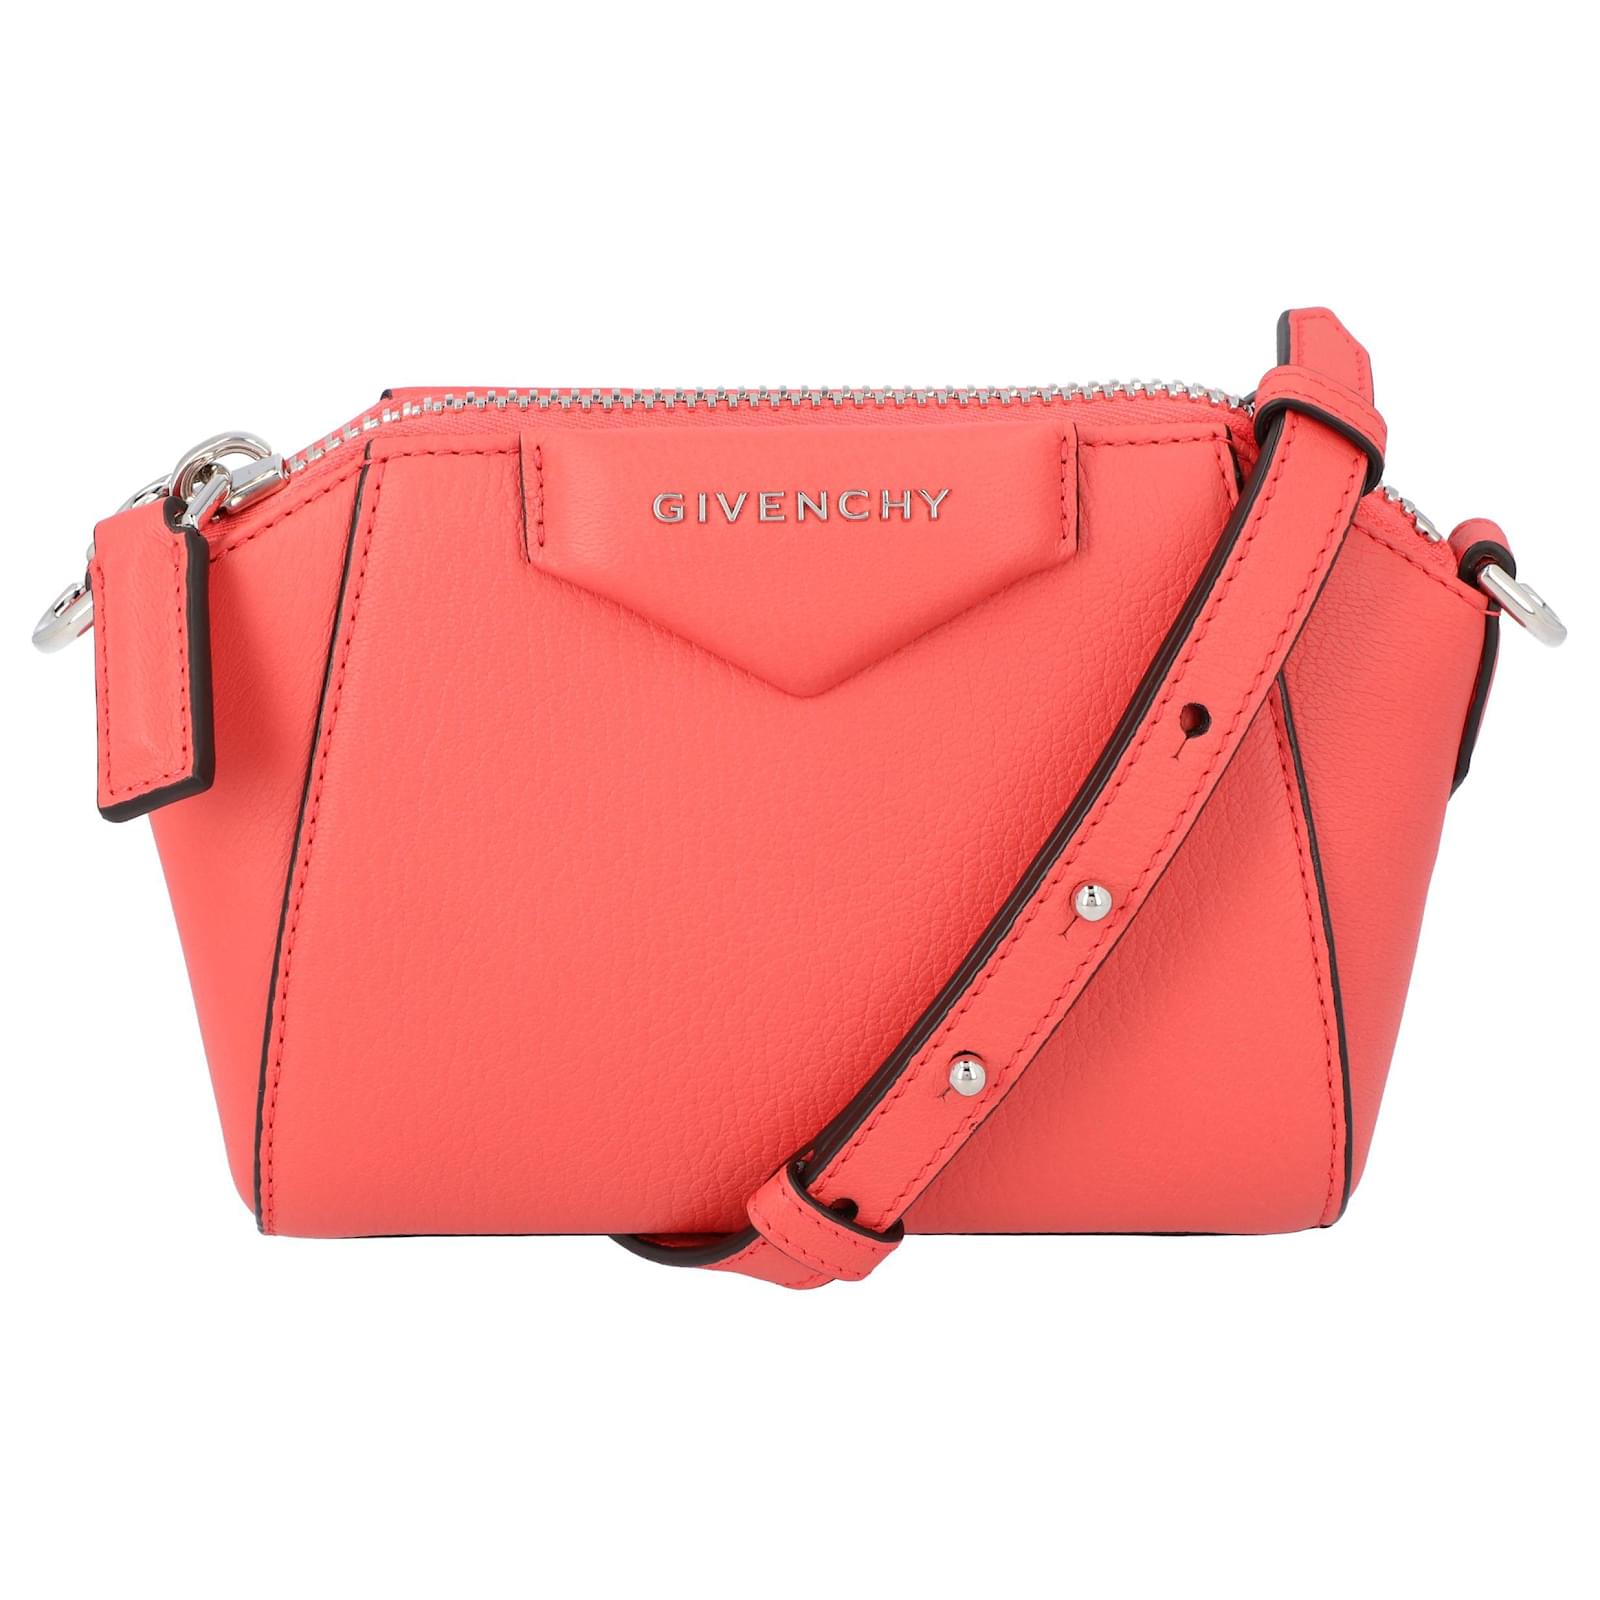 Givenchy Antigona Nano Shoulder Bag